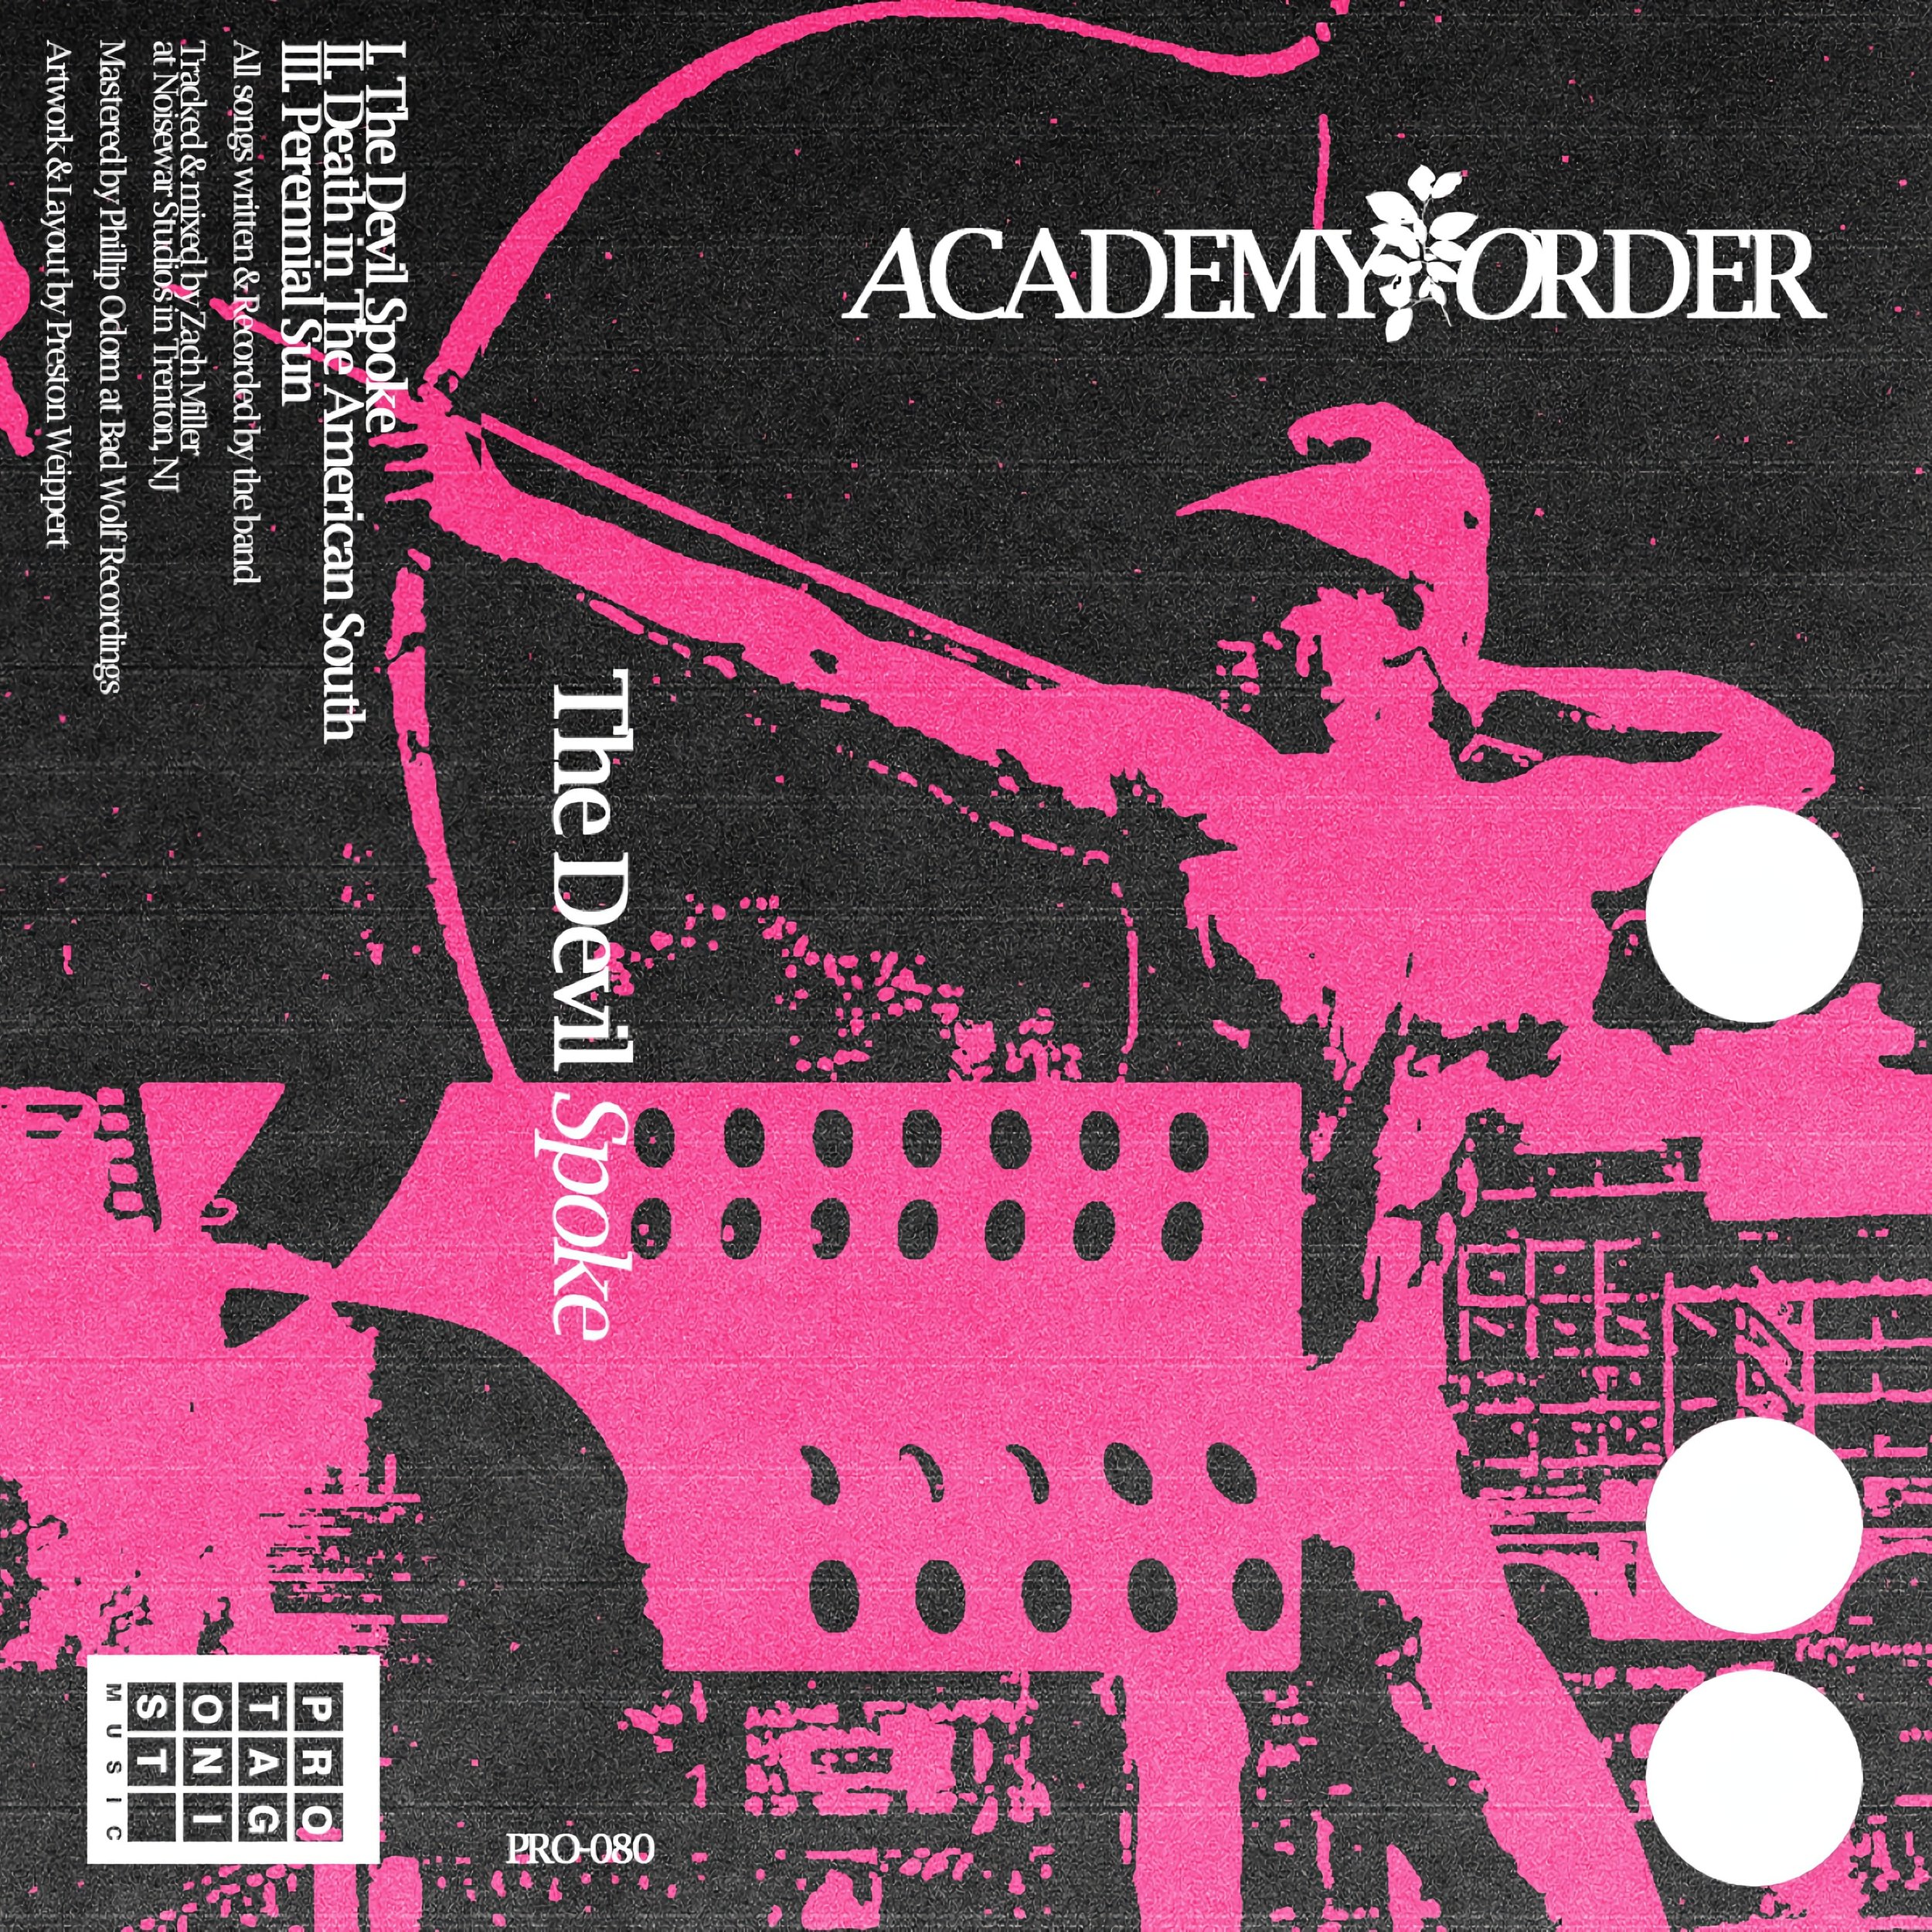 Academy Order - The Devil Spoke - Cover.jpg